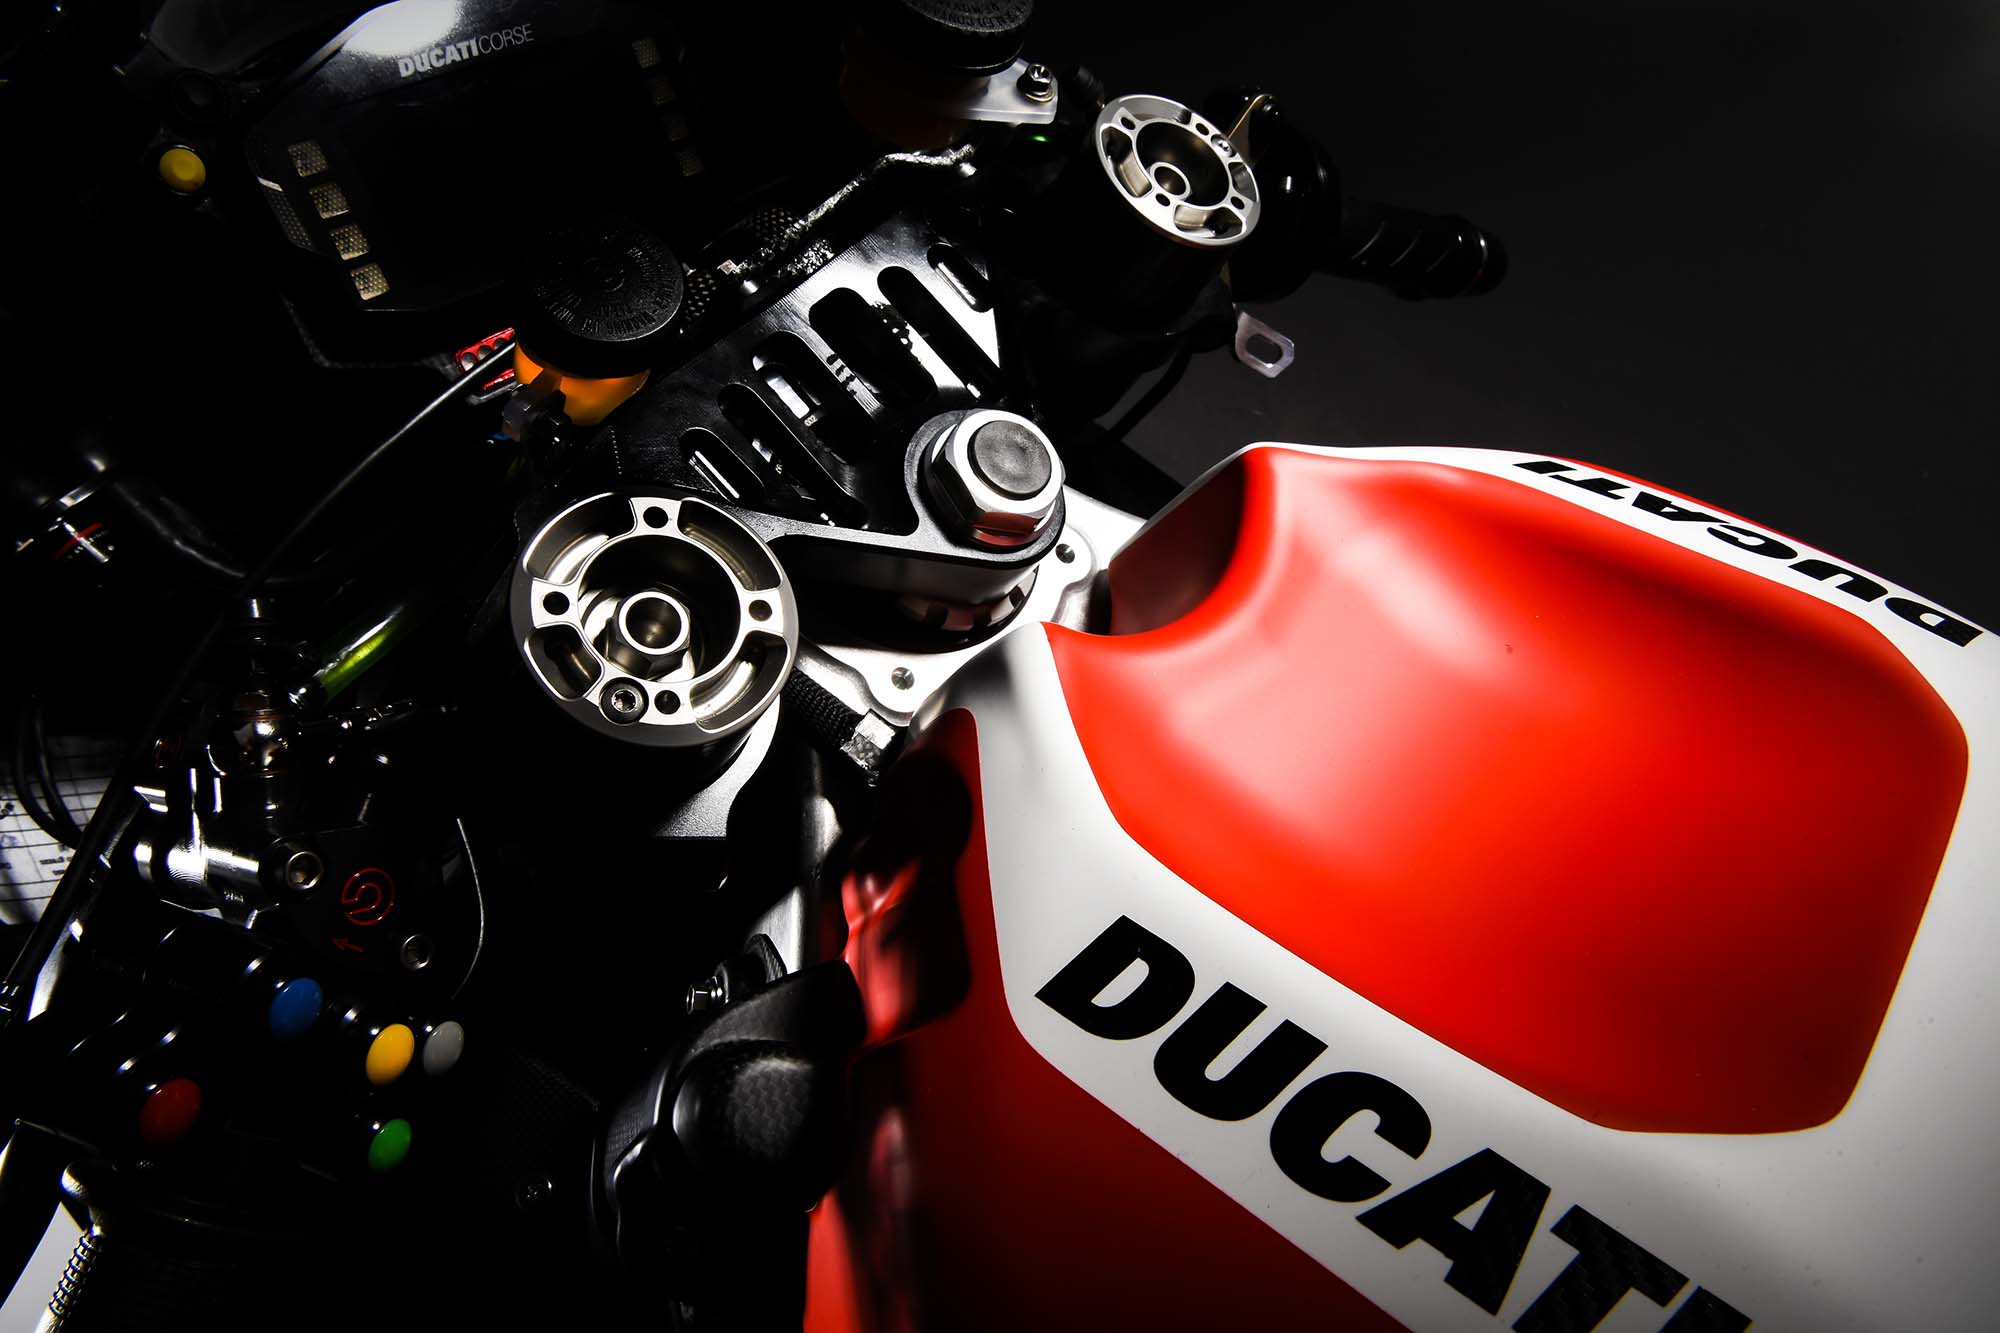 Ducati Desmosedici GP16 Picture Galore